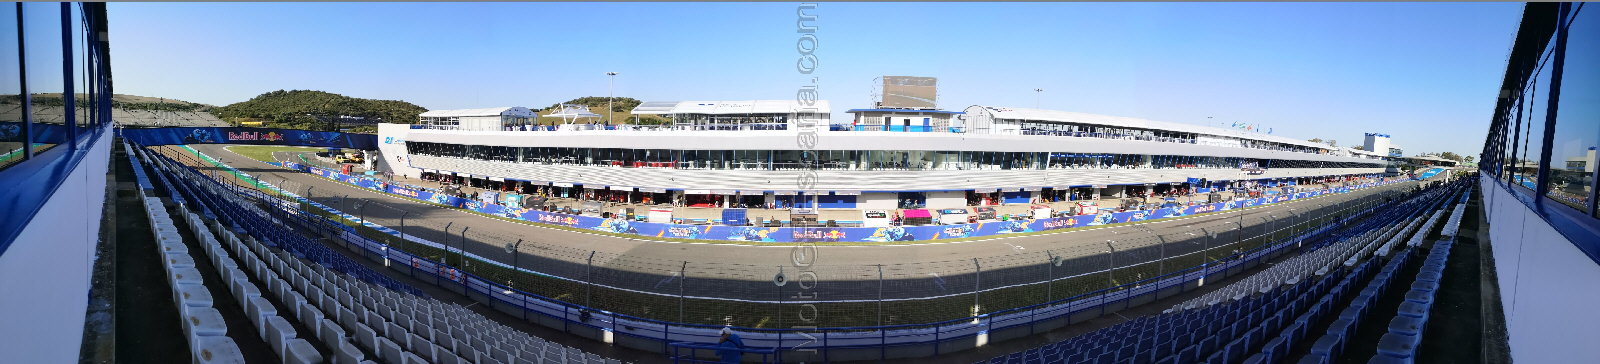 Tribuna VIP del Circuito de Jerez-Angel Nieto